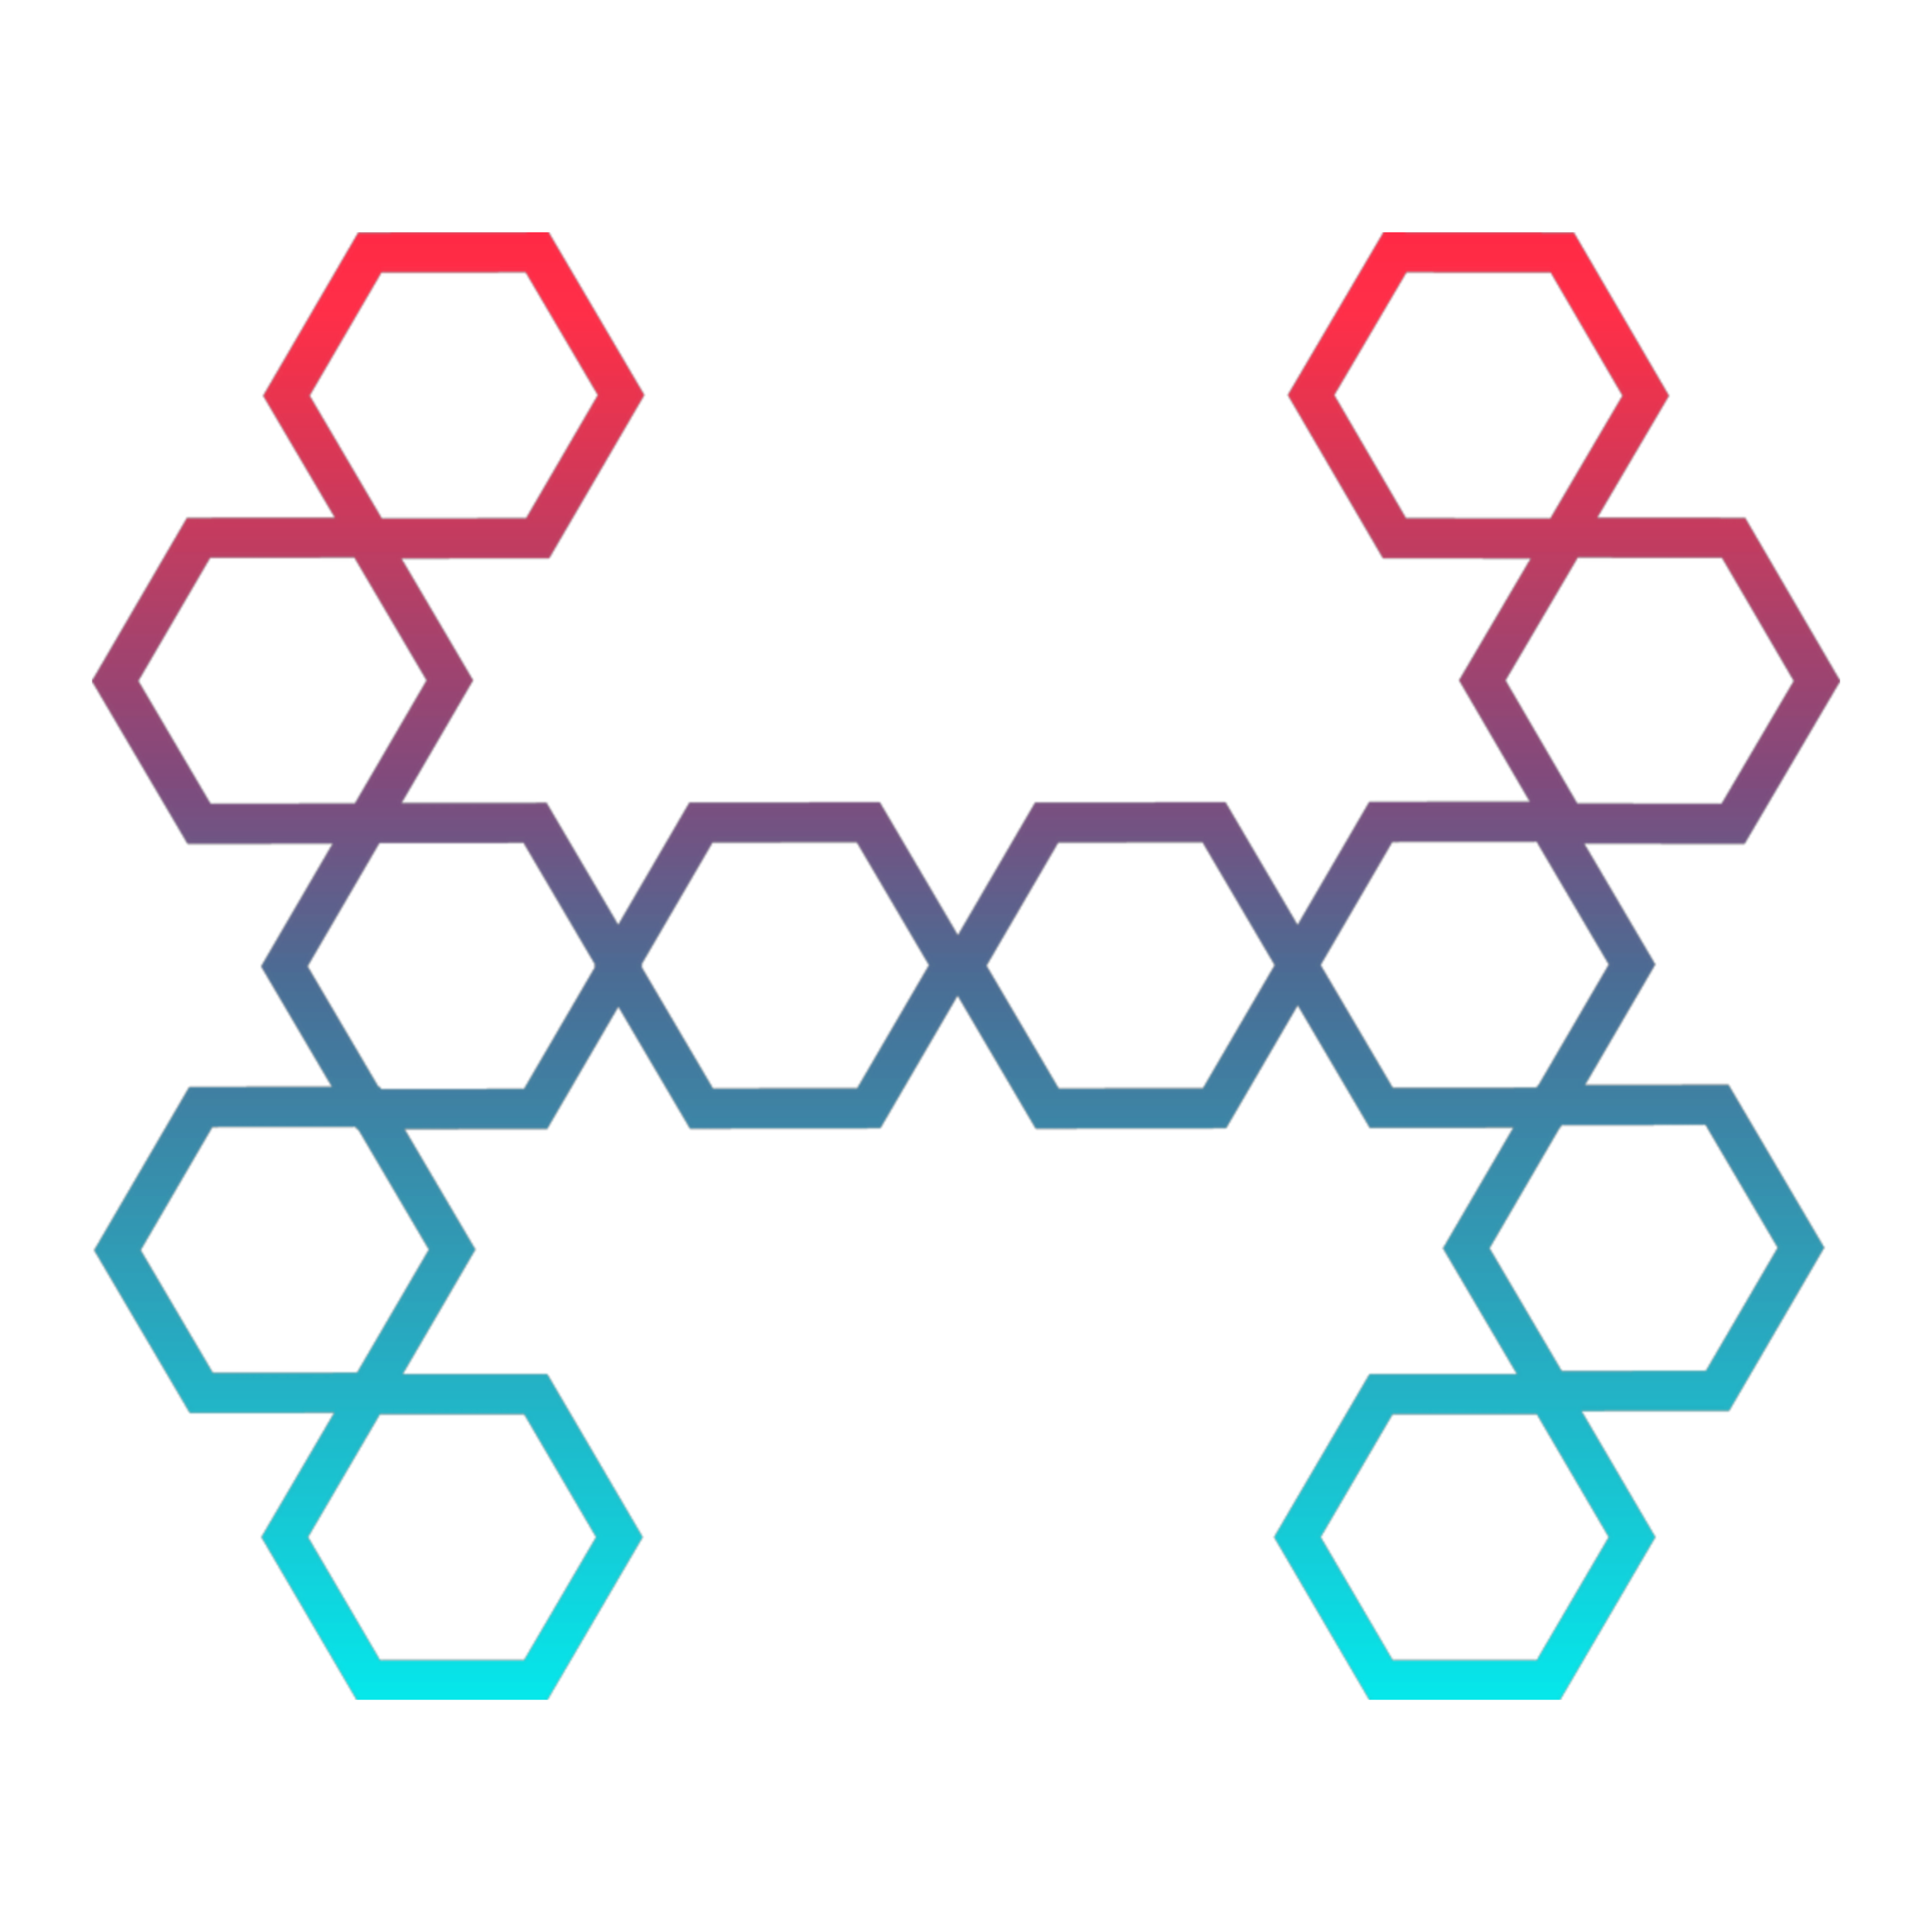 The Hexagon Newsletter